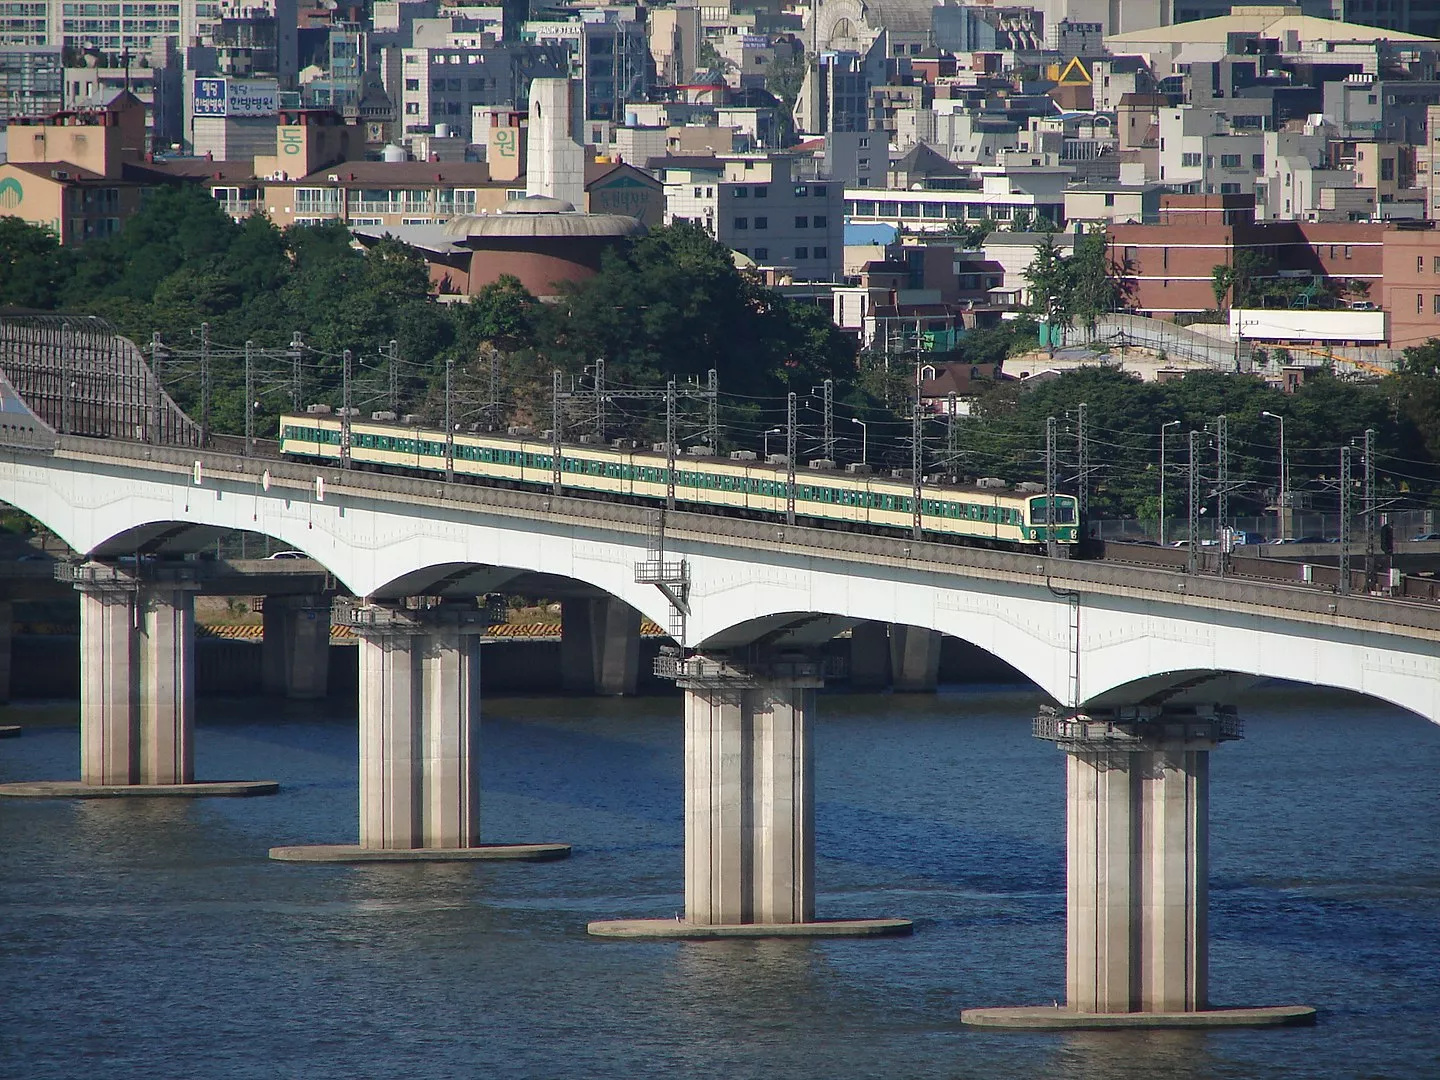 Dangsan Railway Bridge - 당산철교 - Seoul - South Korea